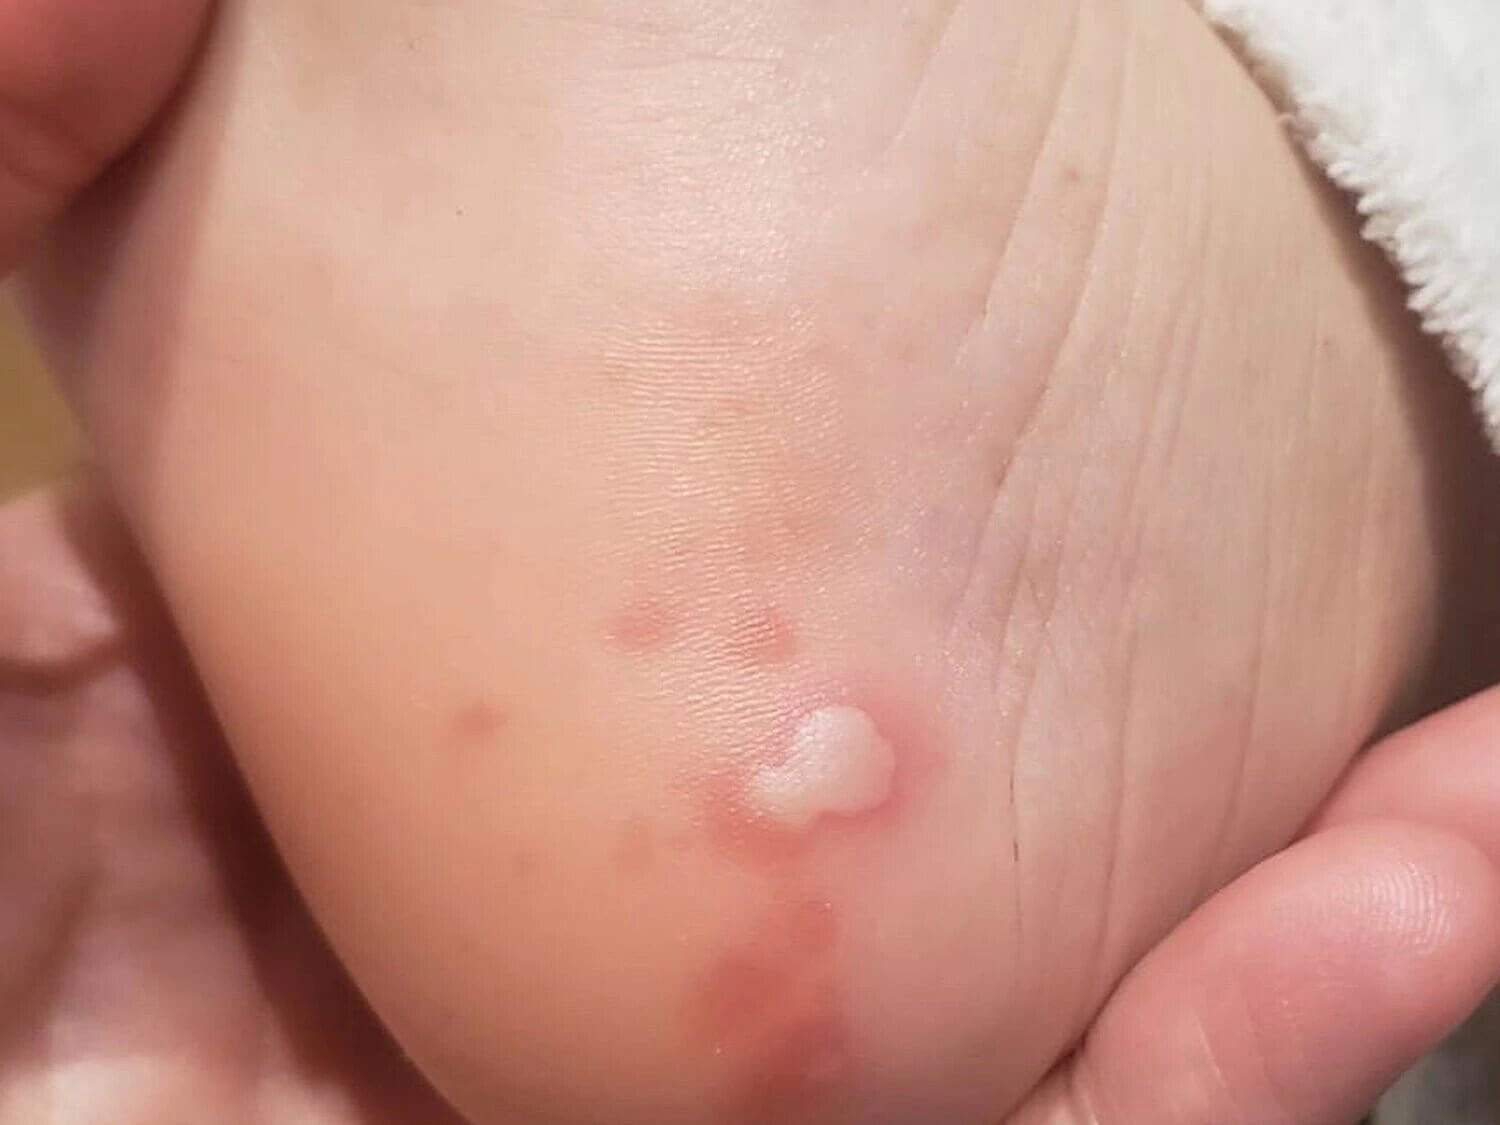 Can skin rash be a symptom of coronavirus?